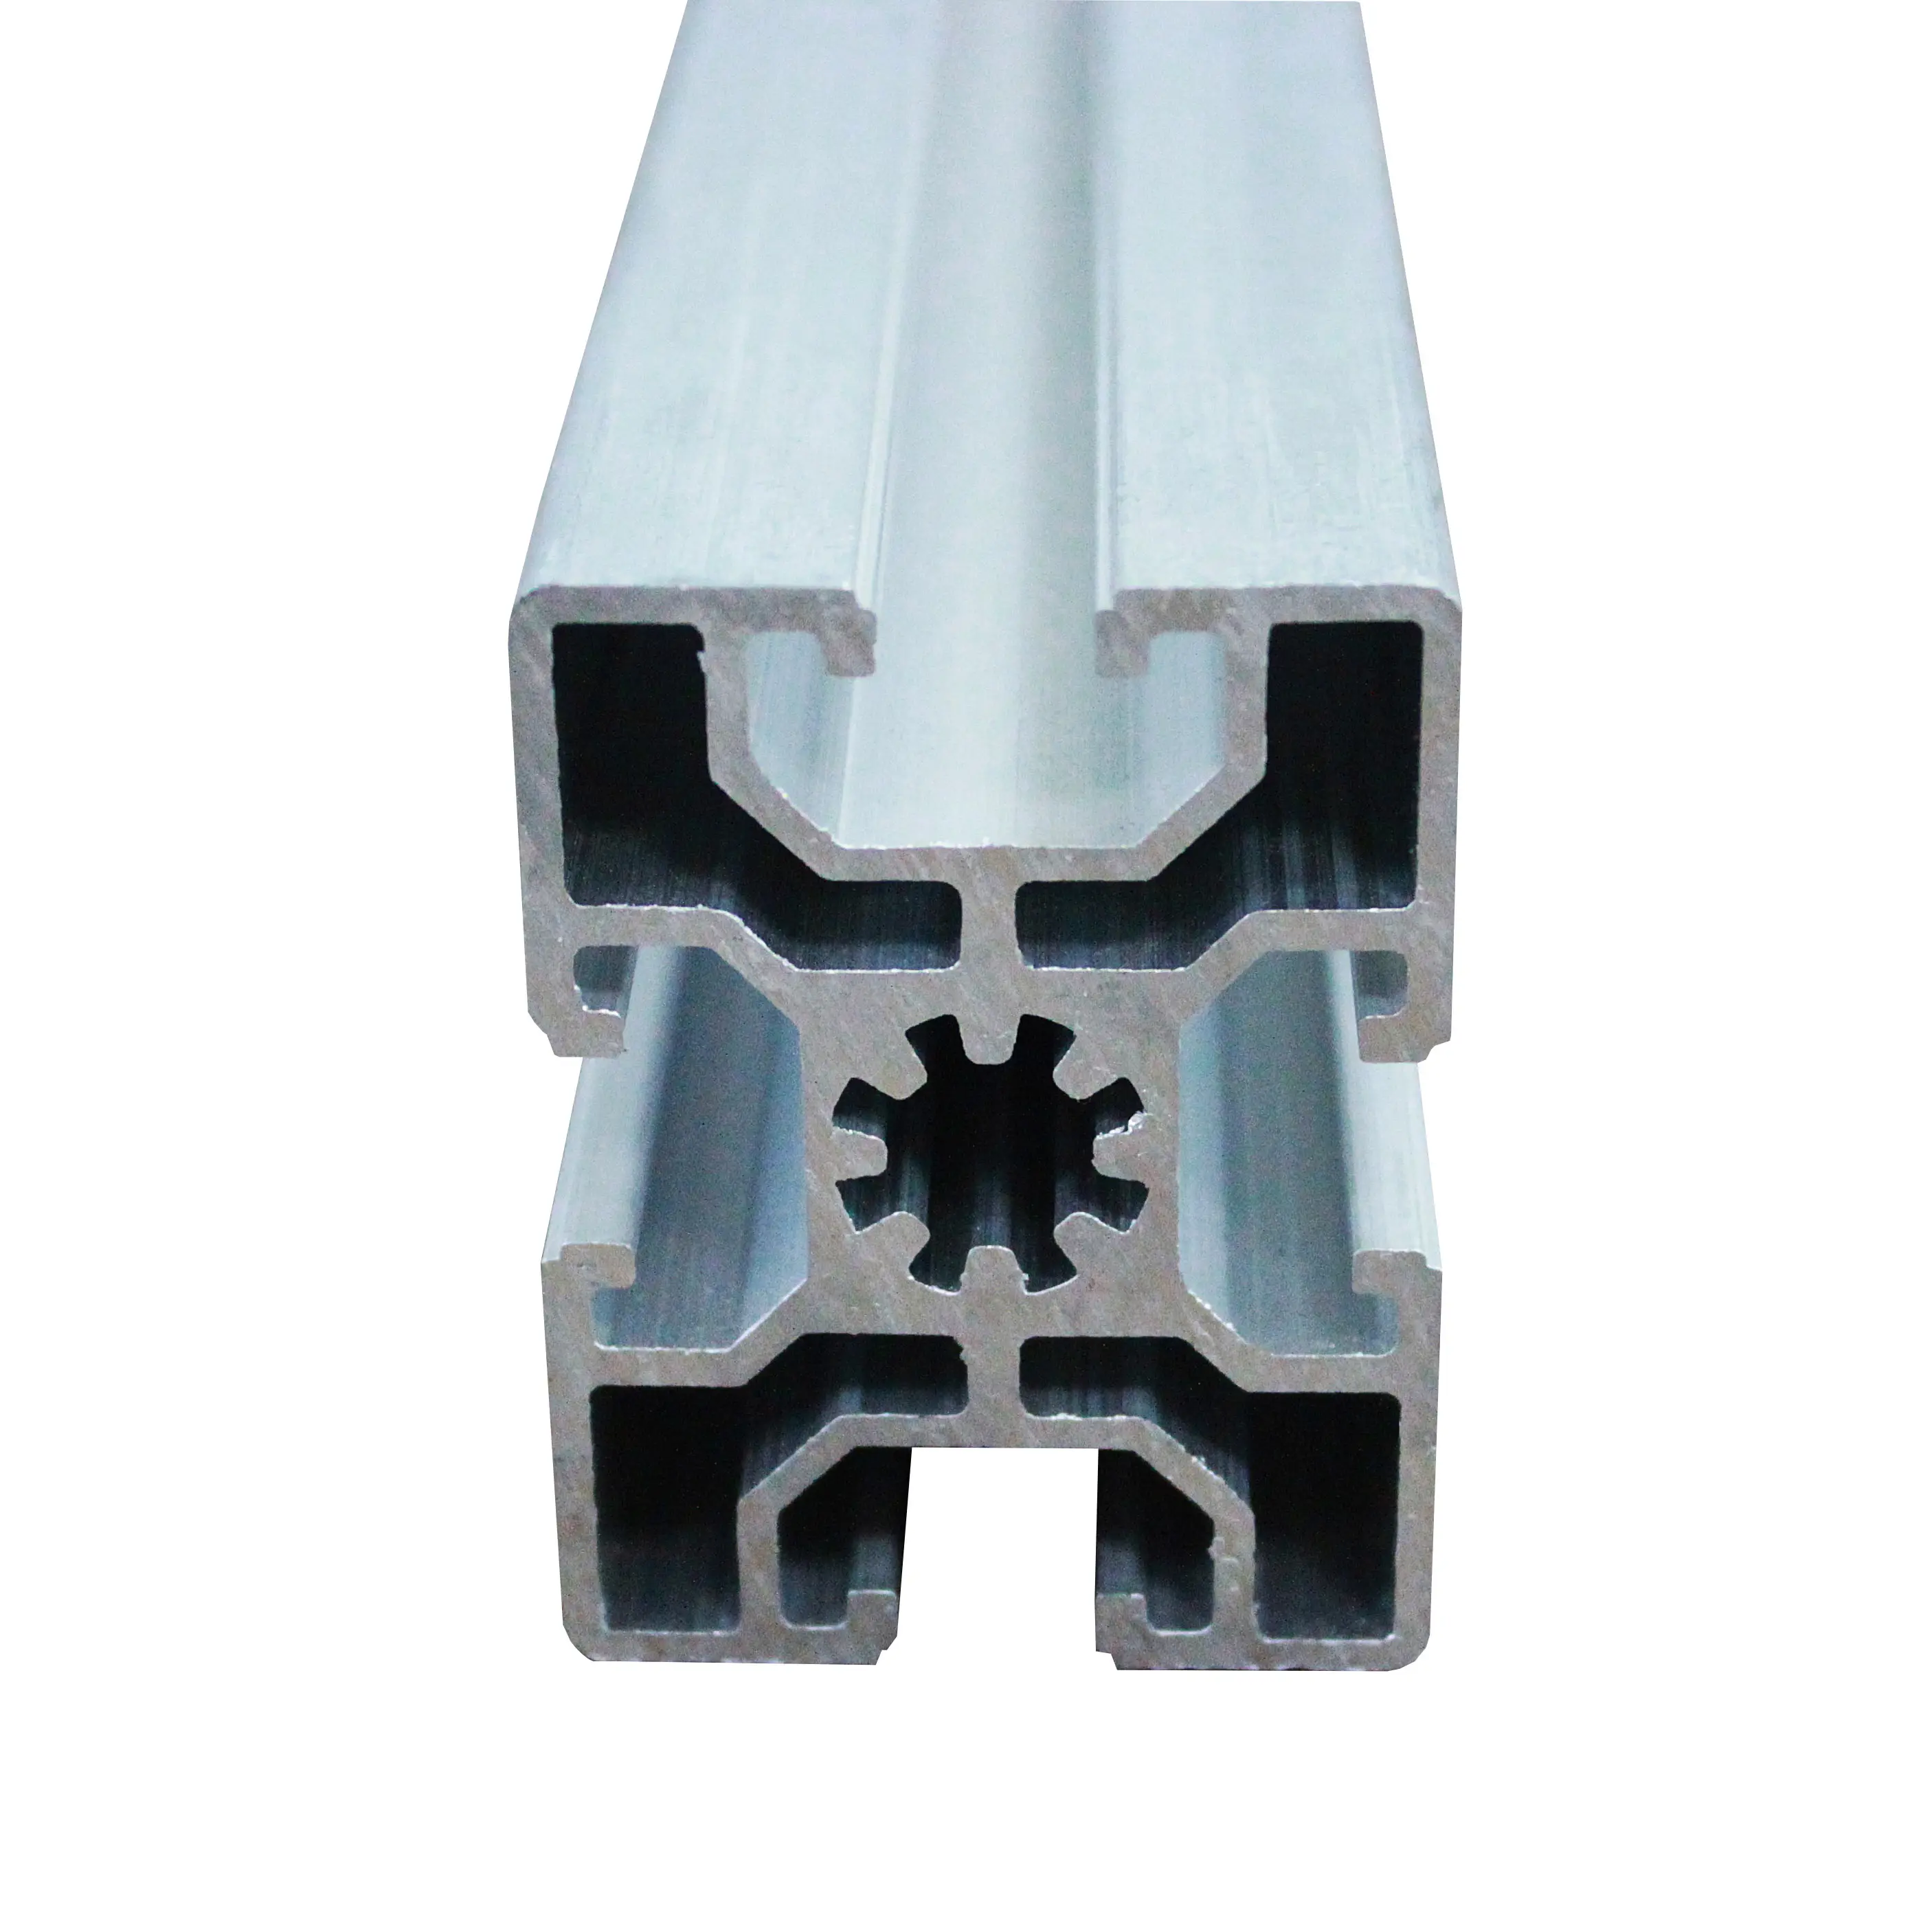 Dongguan fabrika yapmak Metal endüstriyel alüminyum profil için makaralı konveyör çerçeve